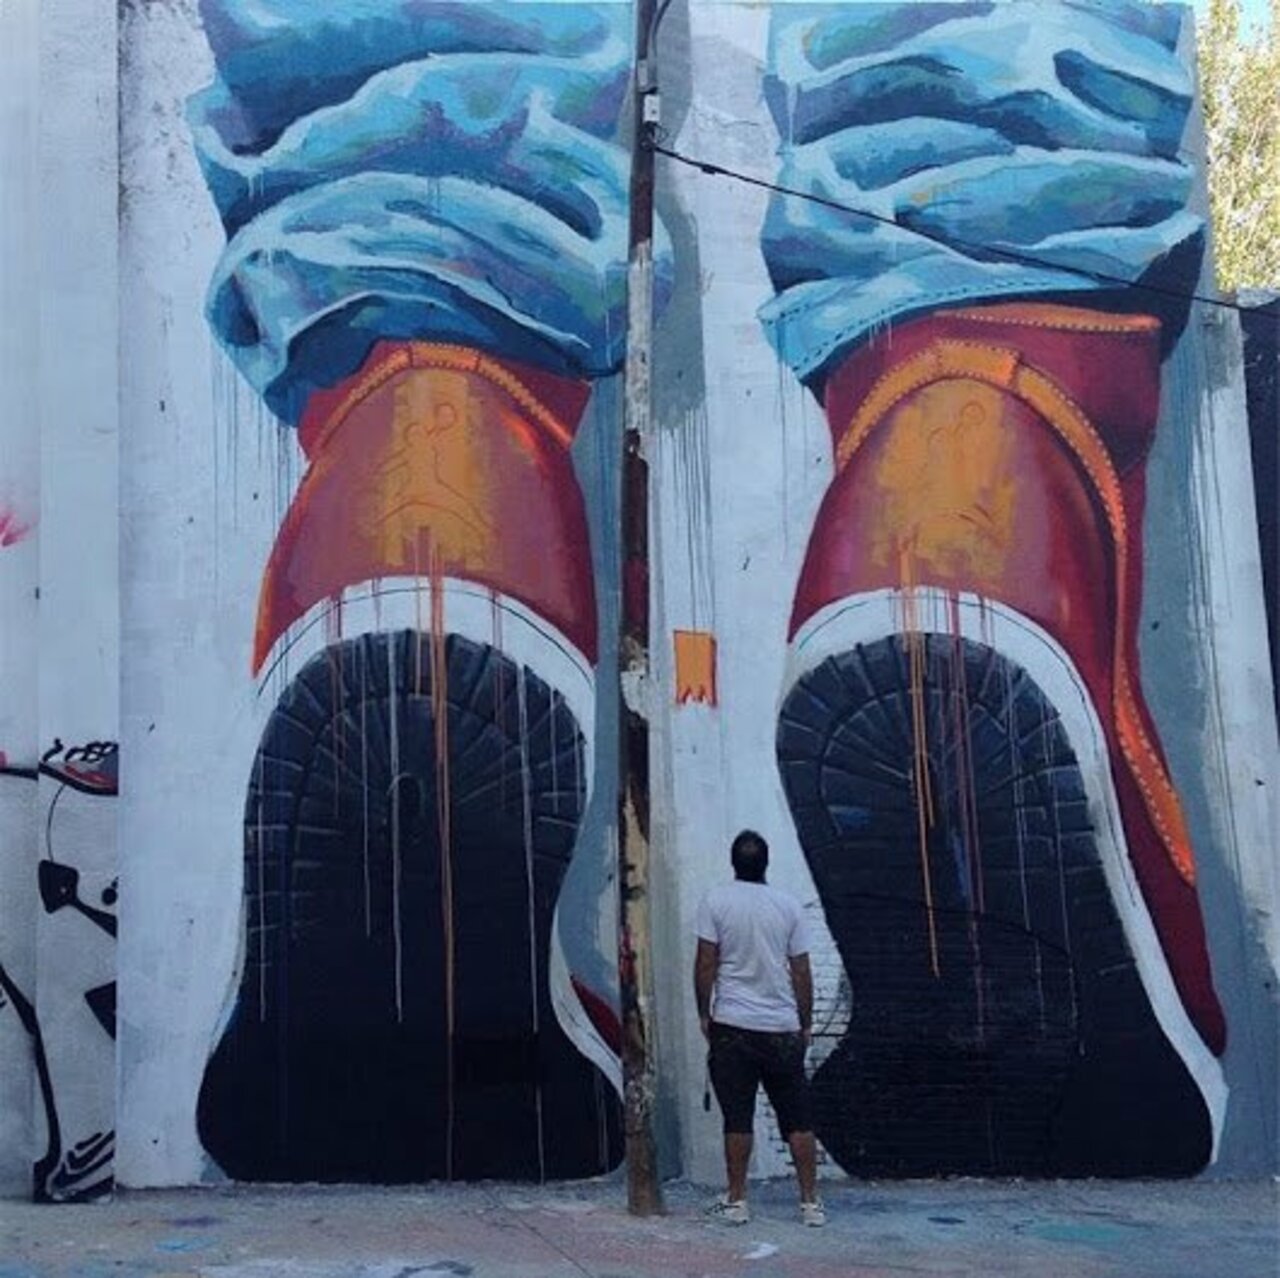 Street Art by Manumanu. #StreetArt #Graffiti #Mural https://t.co/a7zgN72EM7